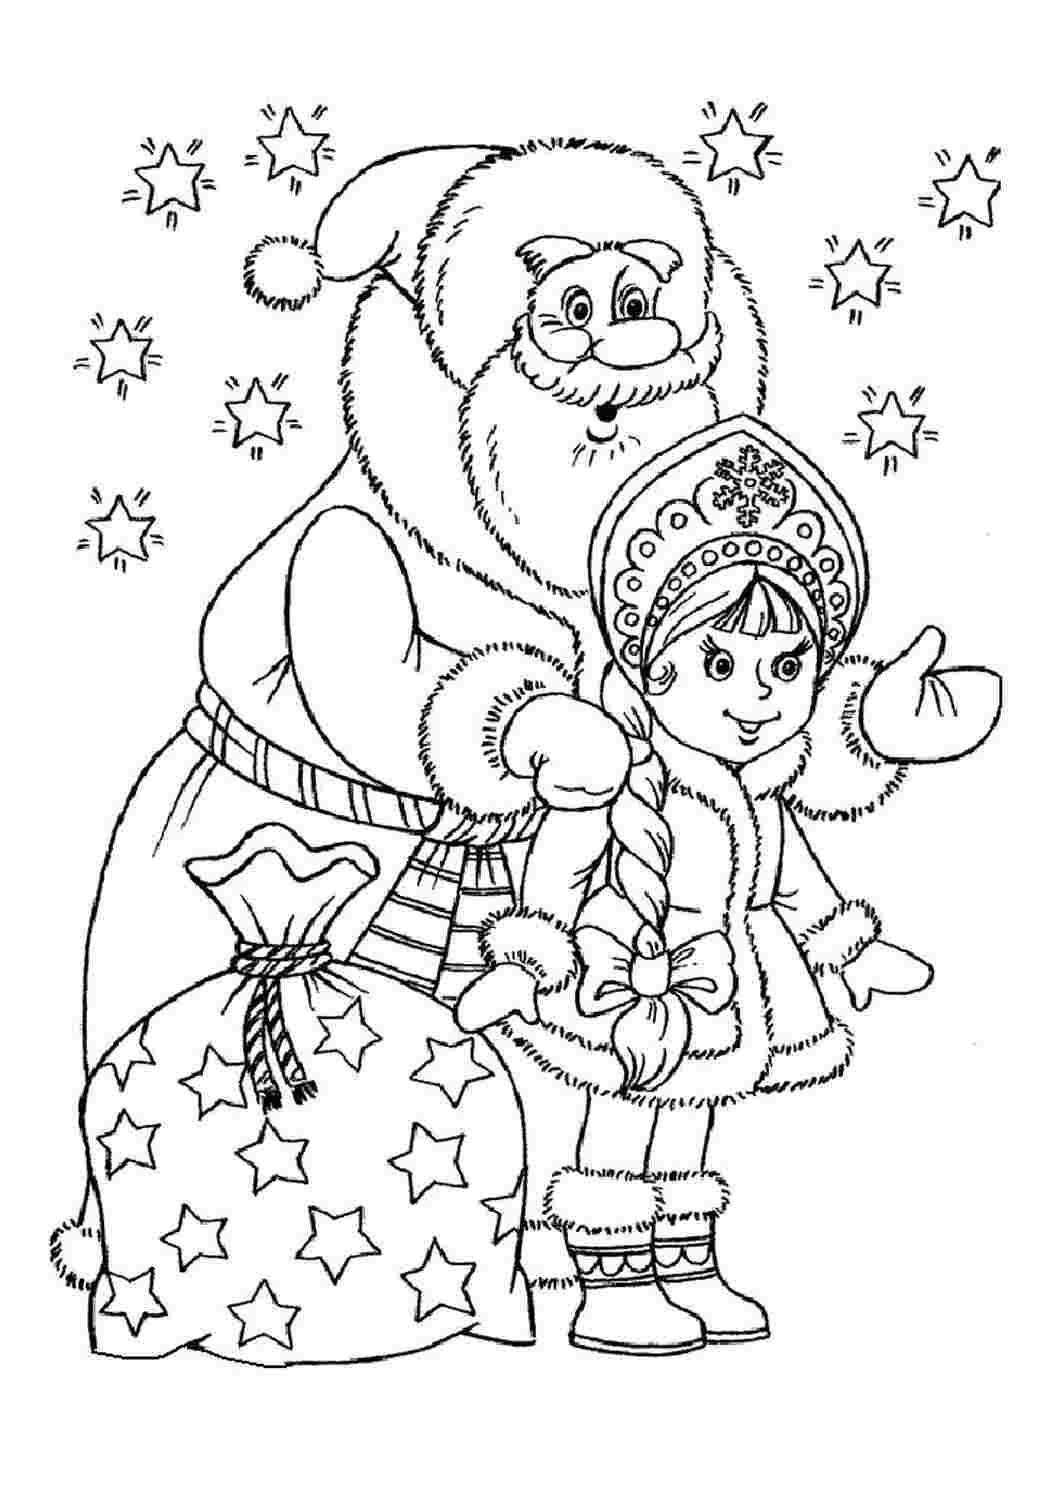 Иллюстрация к сказке Снегурочка раскраска